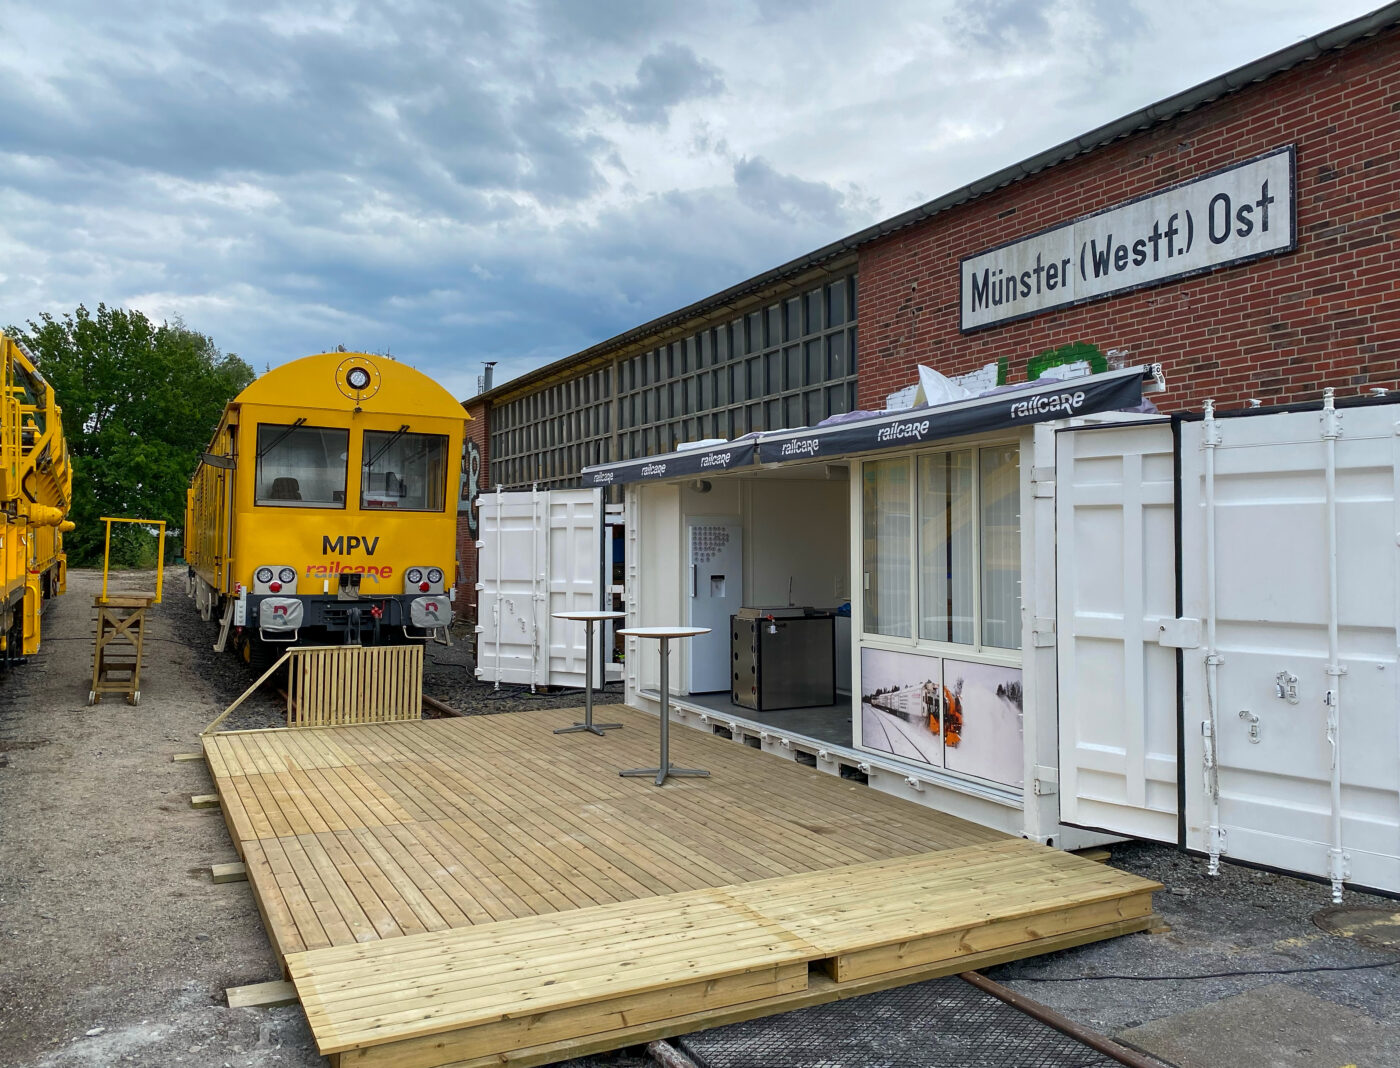 Railcares batteridrivna underhållsmaskin tar plats i Münster